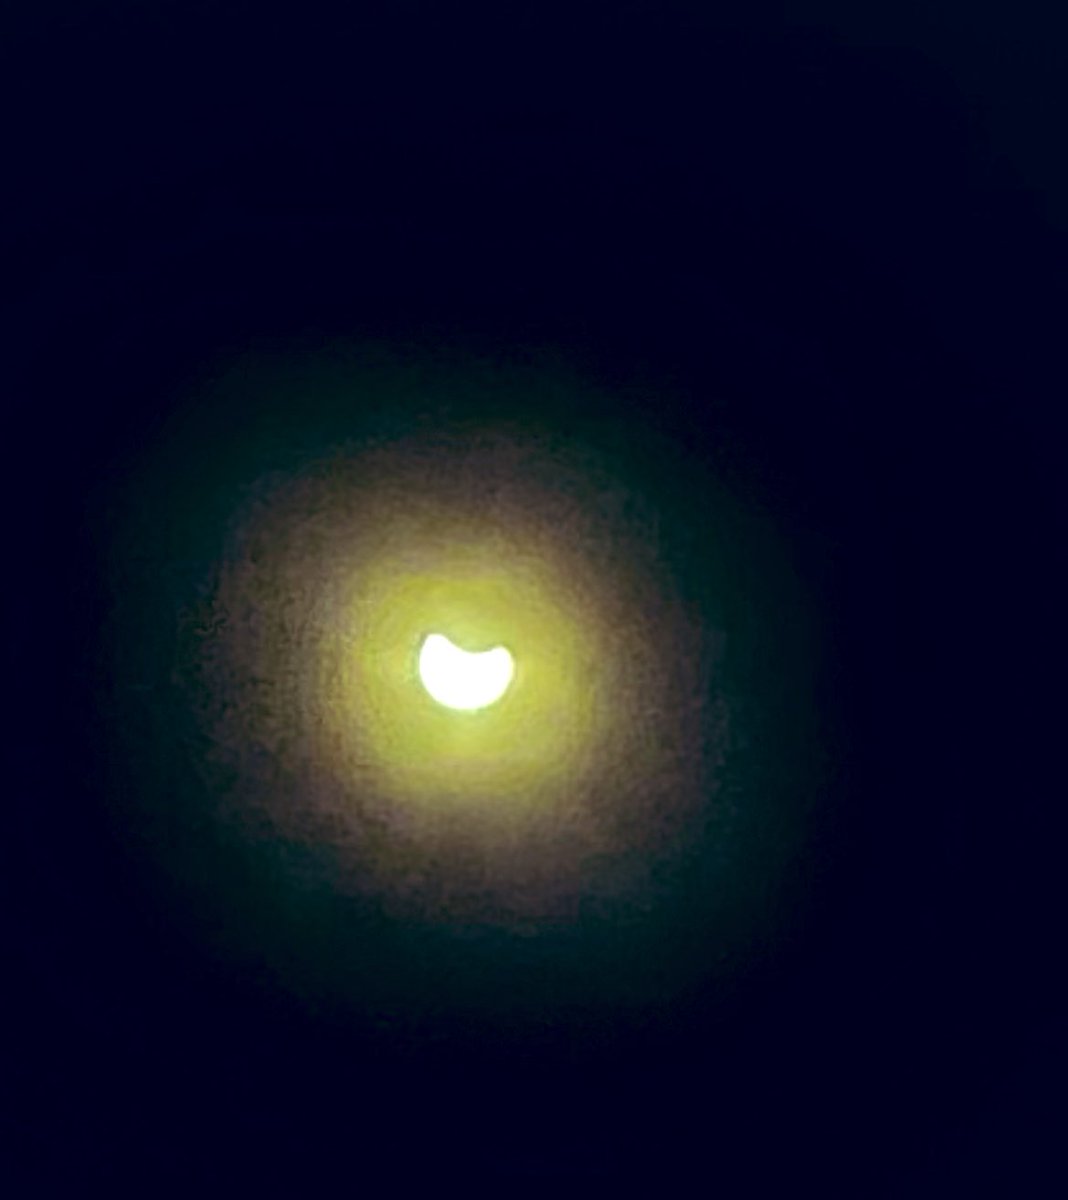 ¿Lo vieron? 😎😎😎😎😎😎 #EclipseSolar